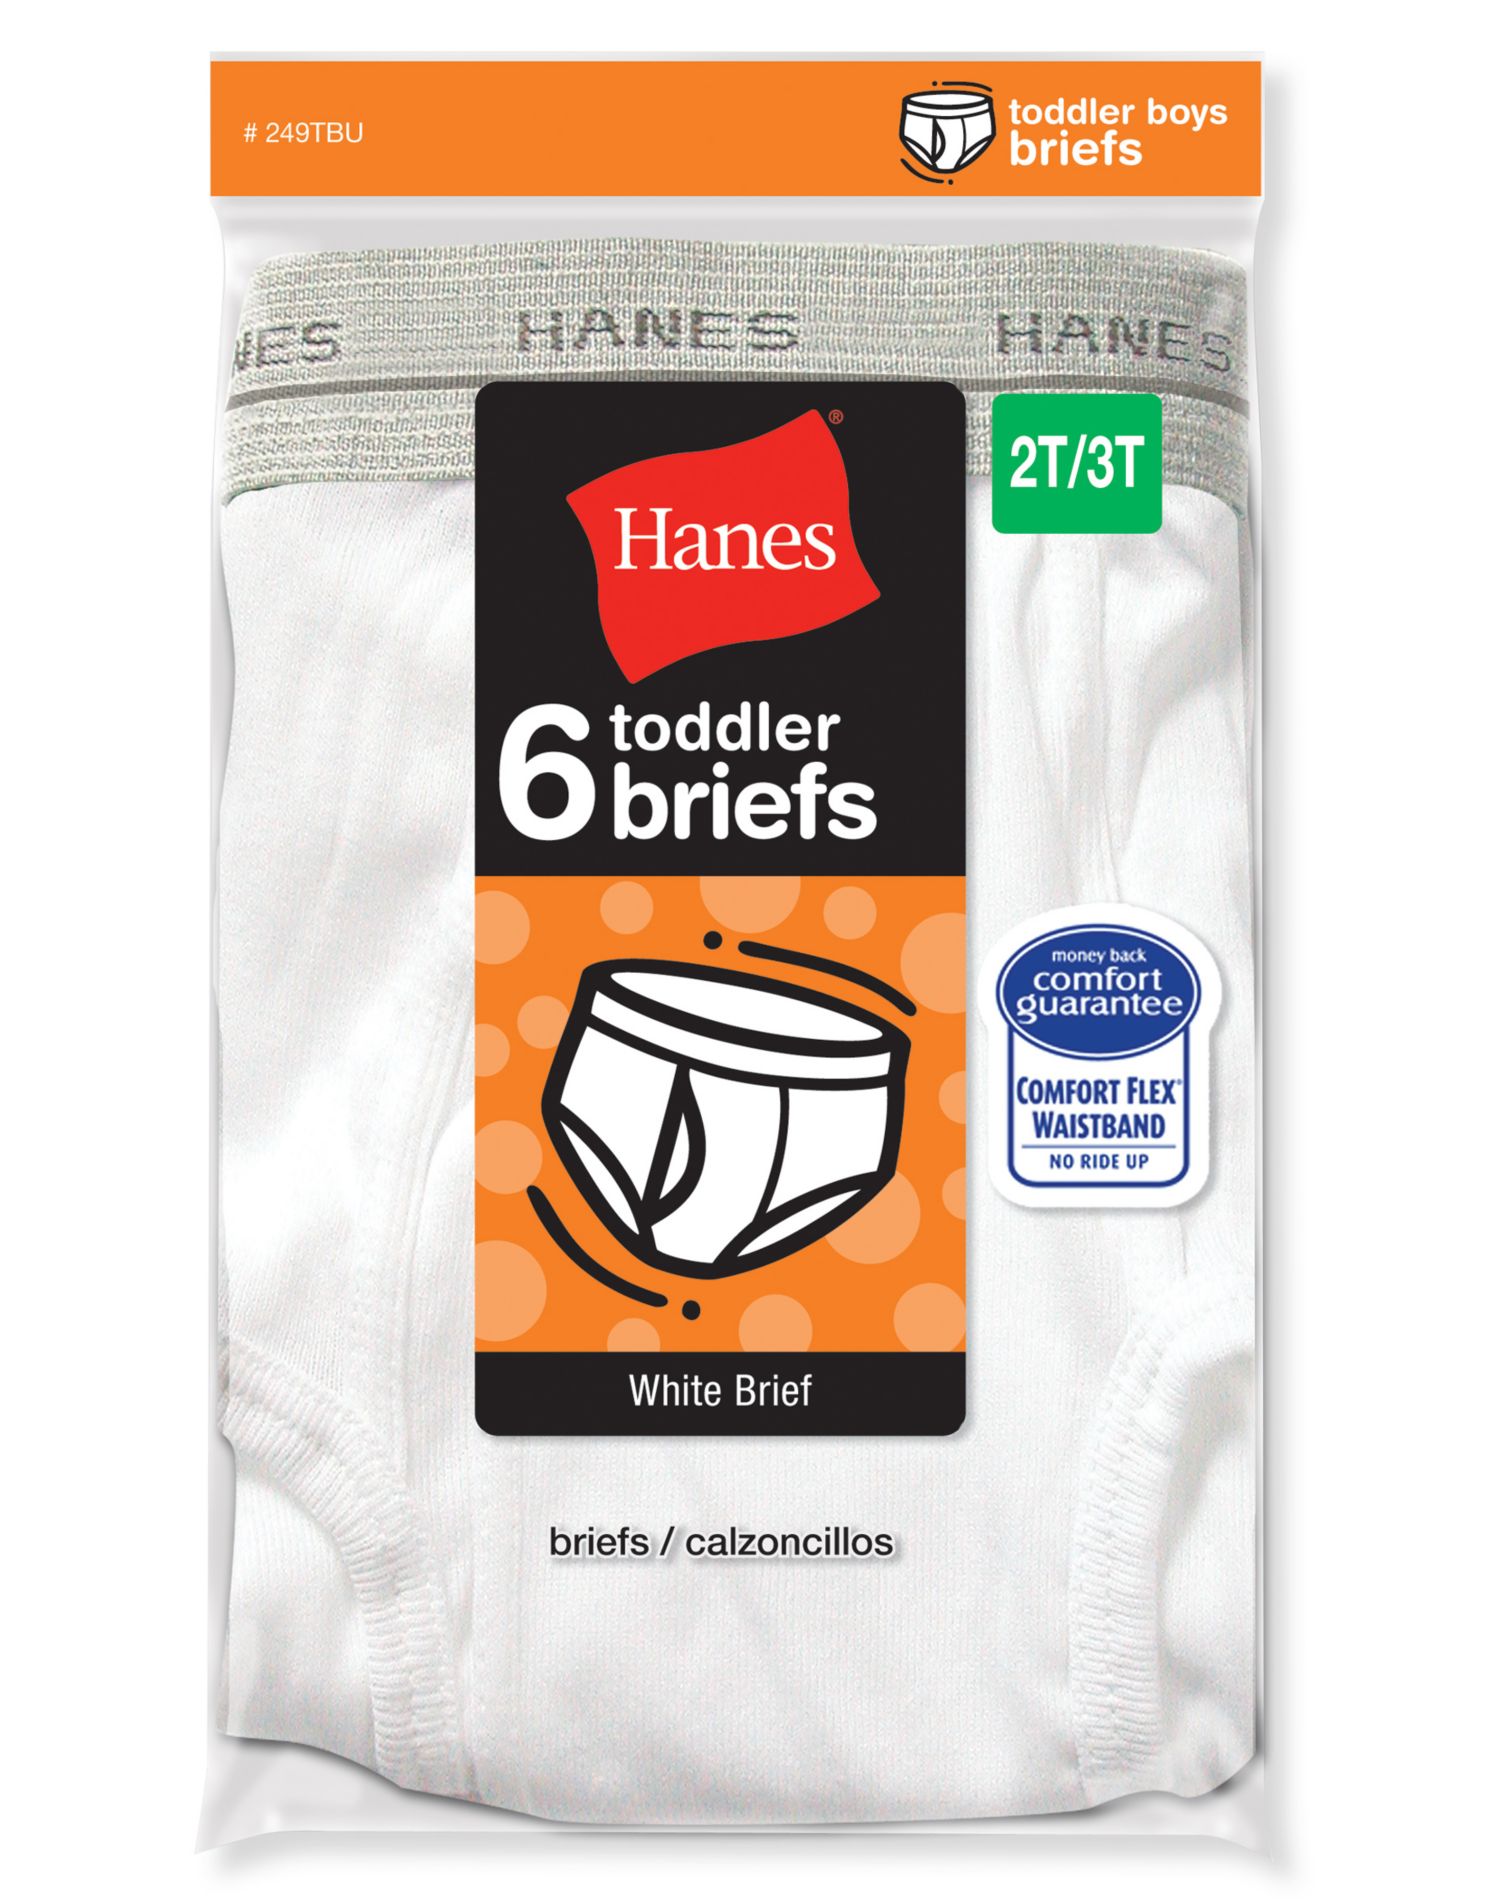 Hanes Toddler Boy Brief Underwear, 6 Pack, Sizes 6M-5T - image 2 of 2